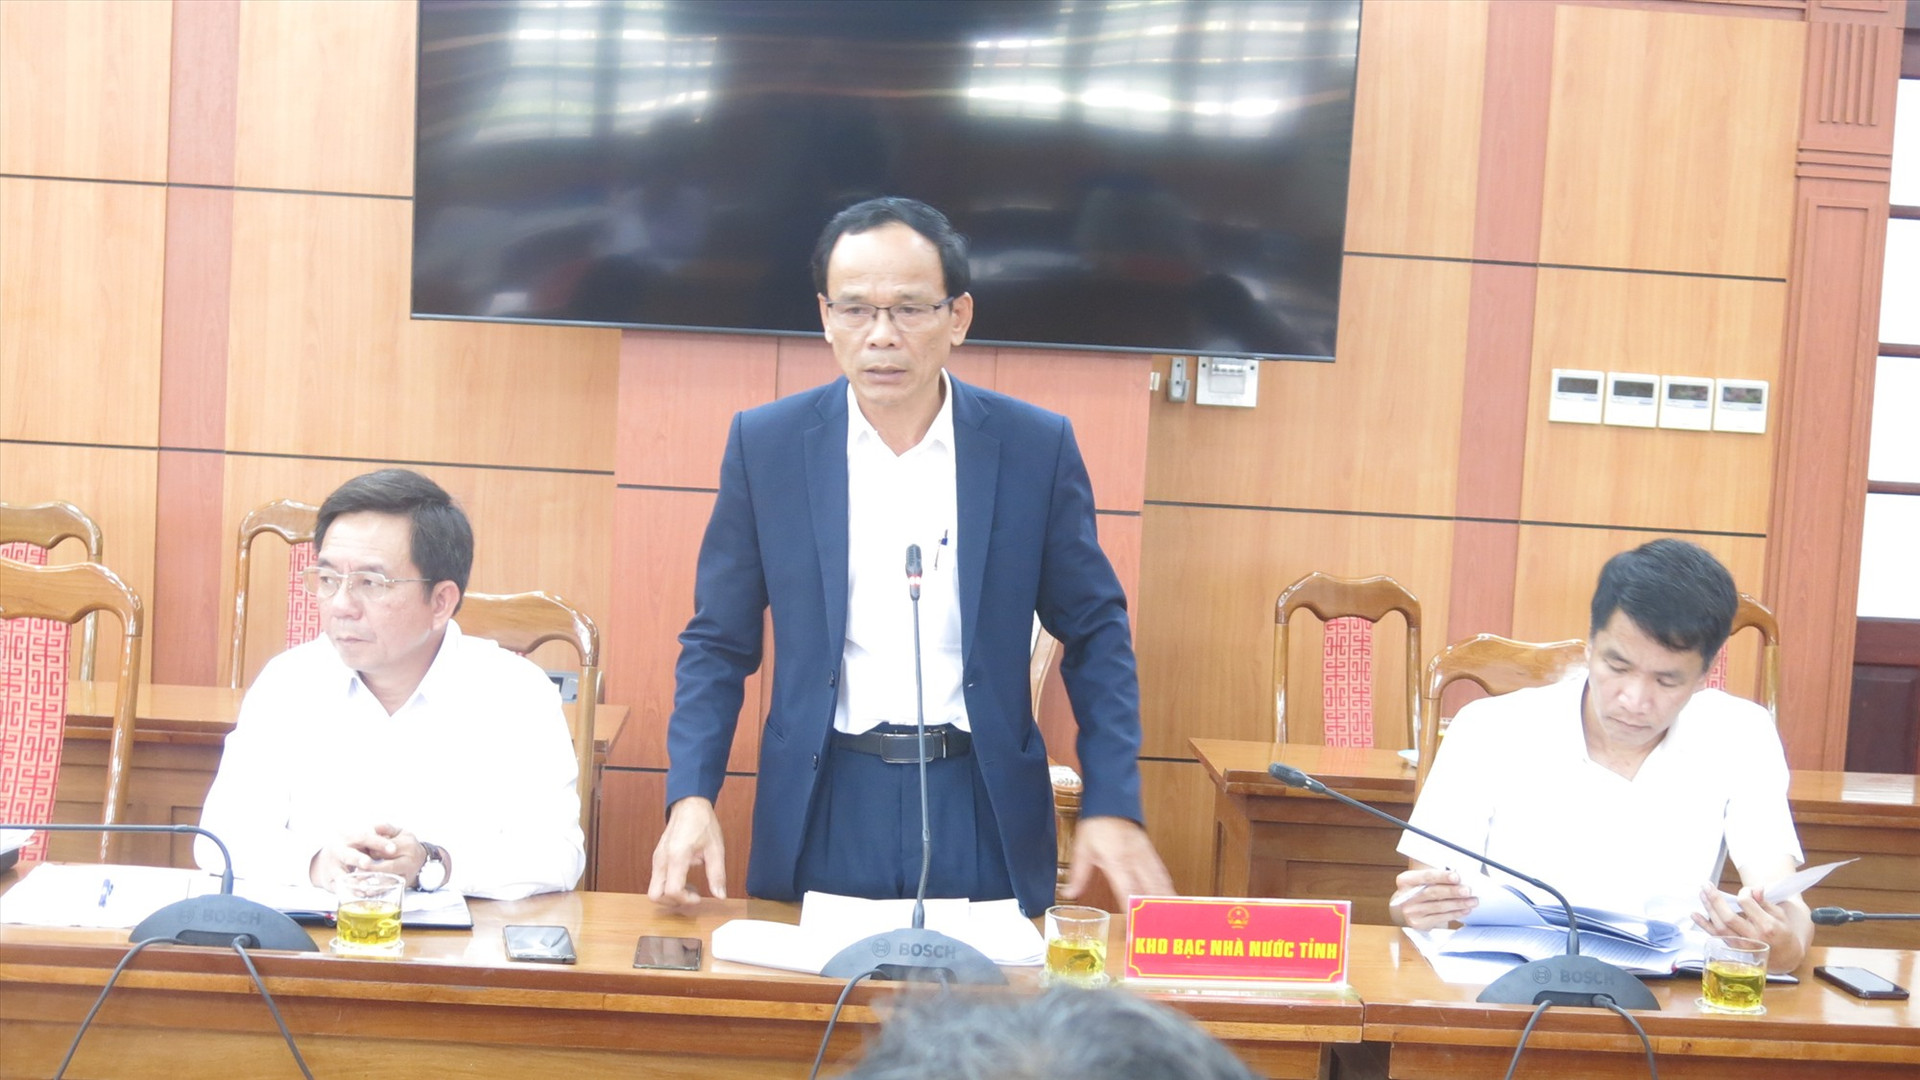 Phó giám đốc Kho bạc Nhà nước Quảng Nam trình bày báo cáo và giải trình việc kiểm soát chi vốn ngân sách